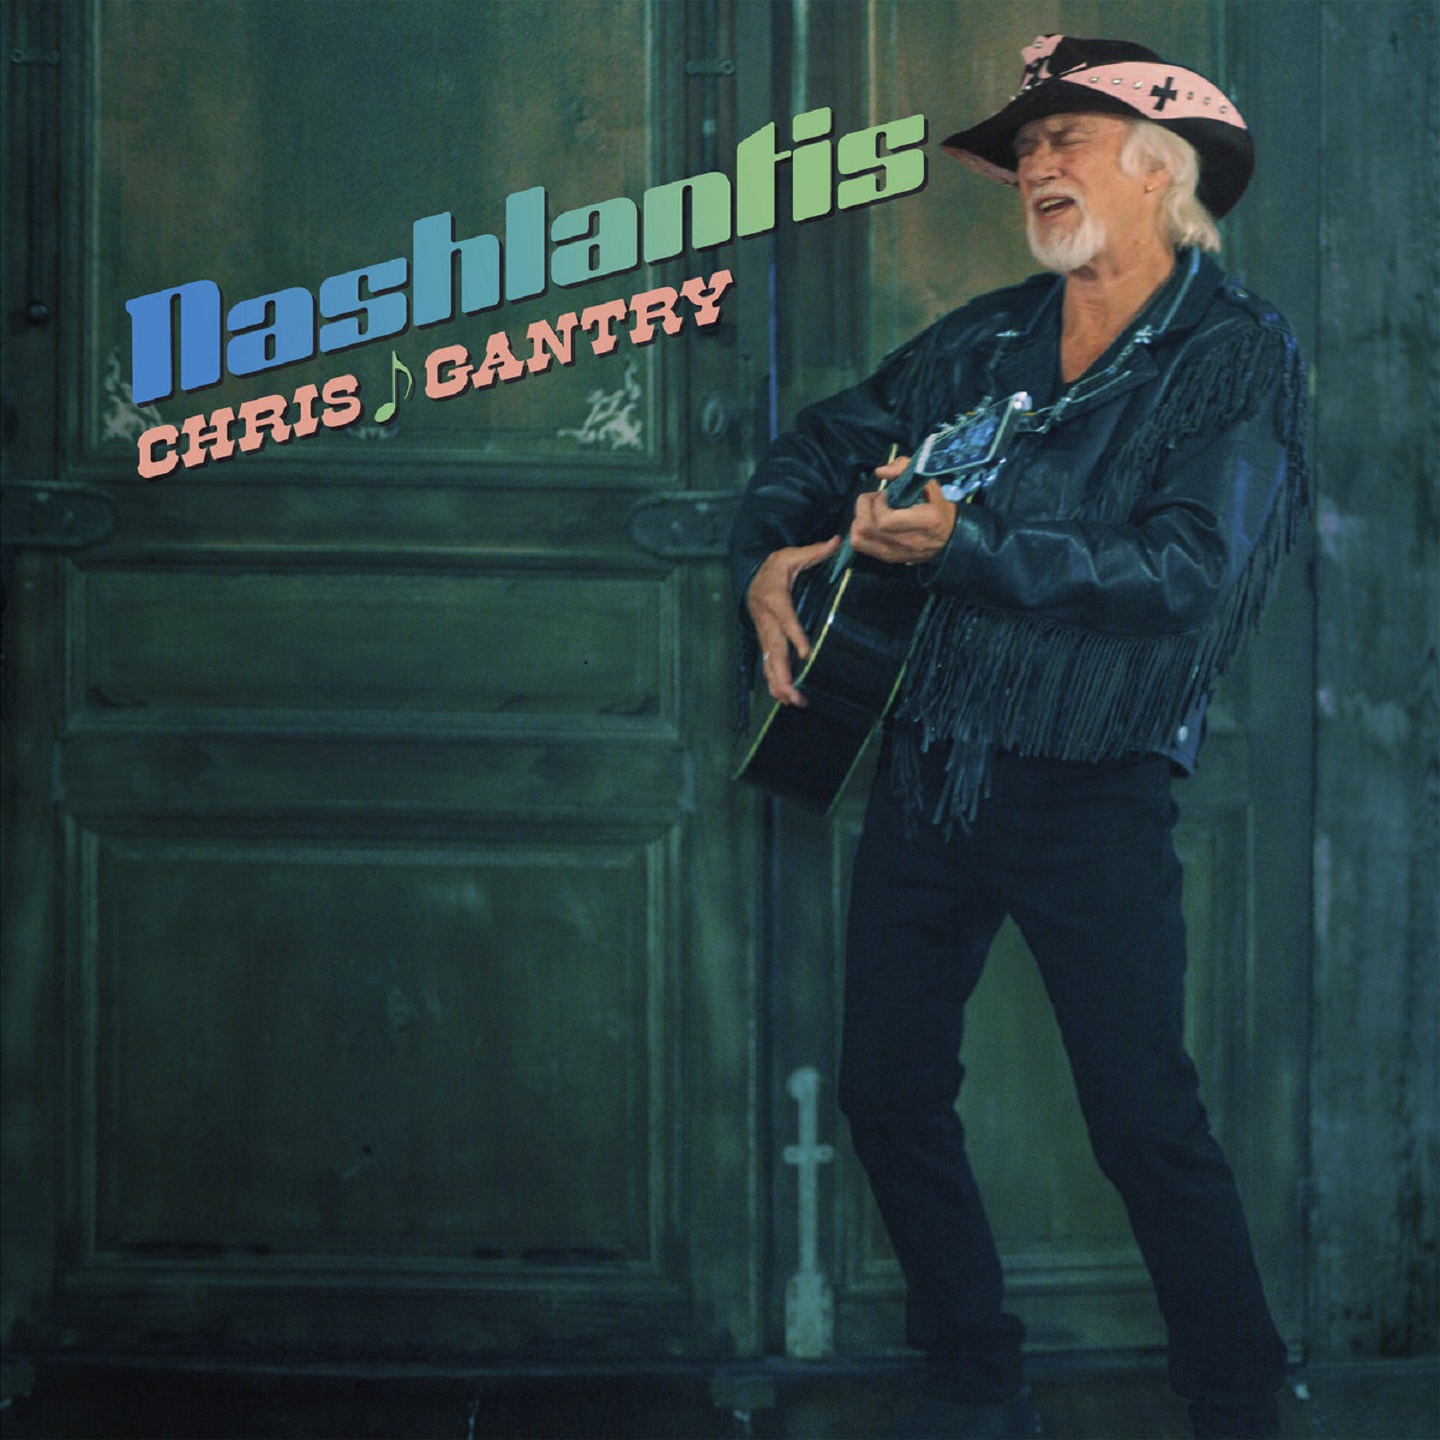 Chris Gantry to release "Nashlantis" on 7/26